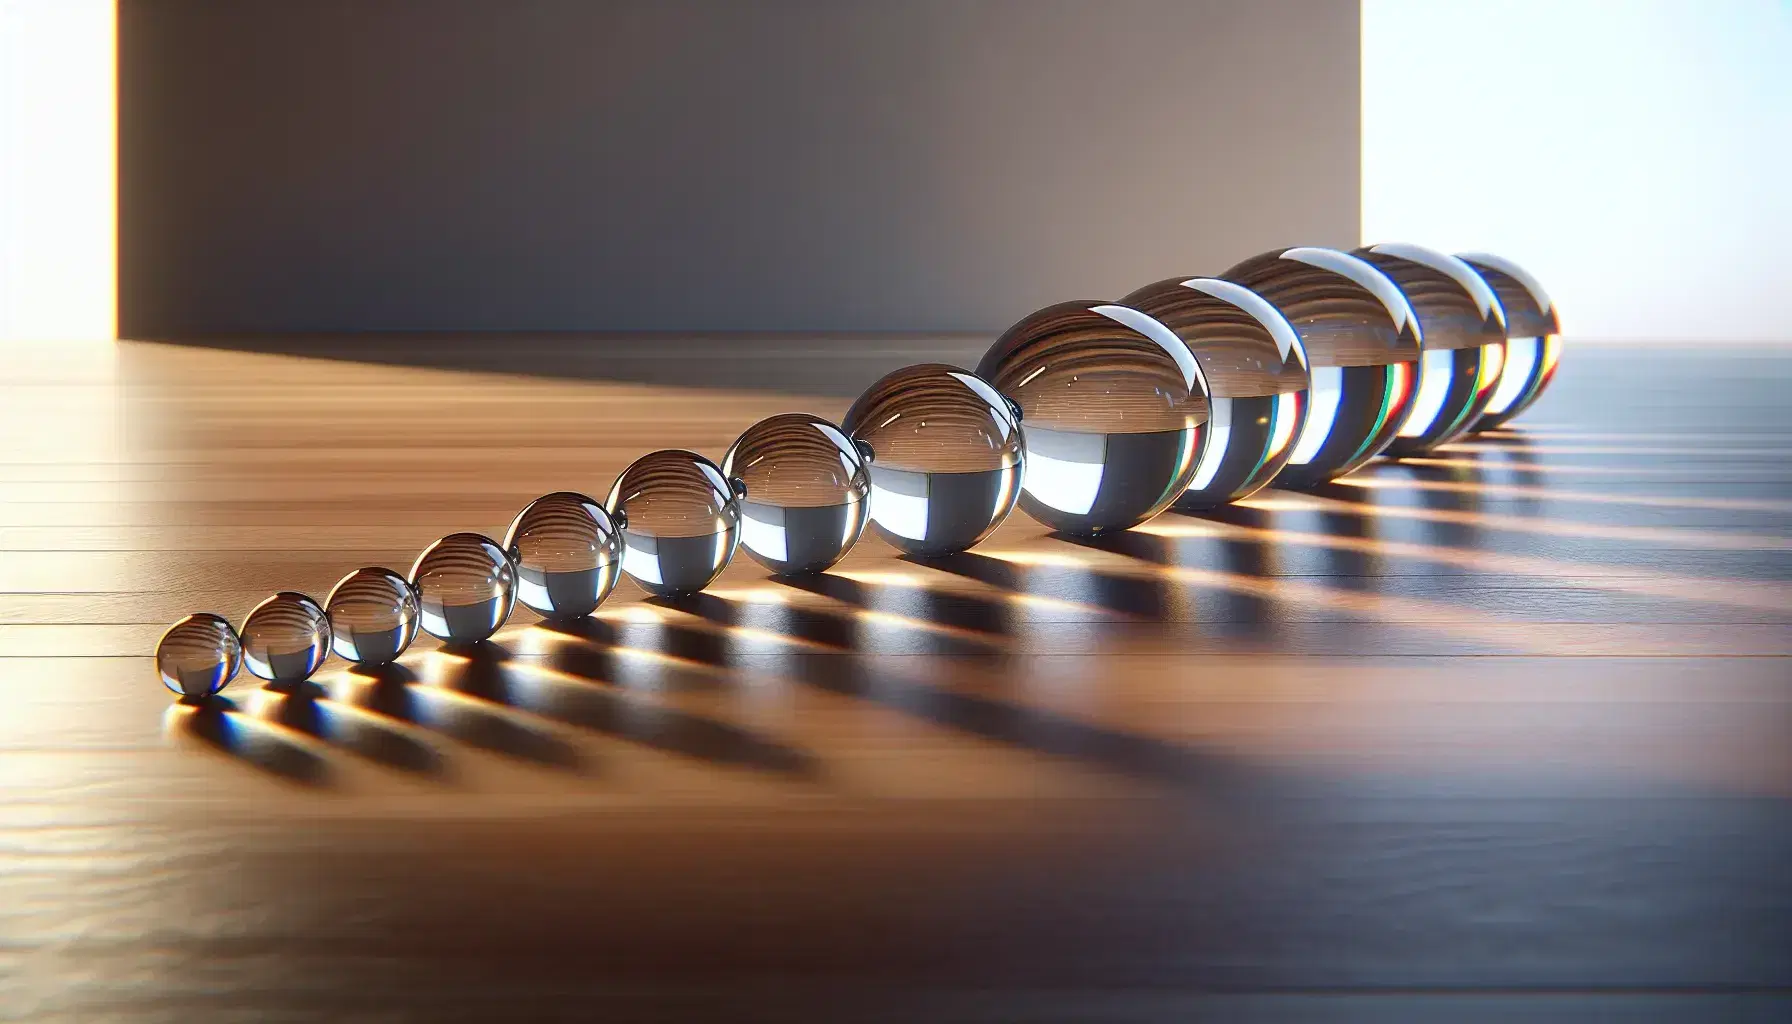 Esferas de vidrio transparentes en secuencia decreciente sobre superficie de madera pulida con reflejos de luz y sombras suaves.